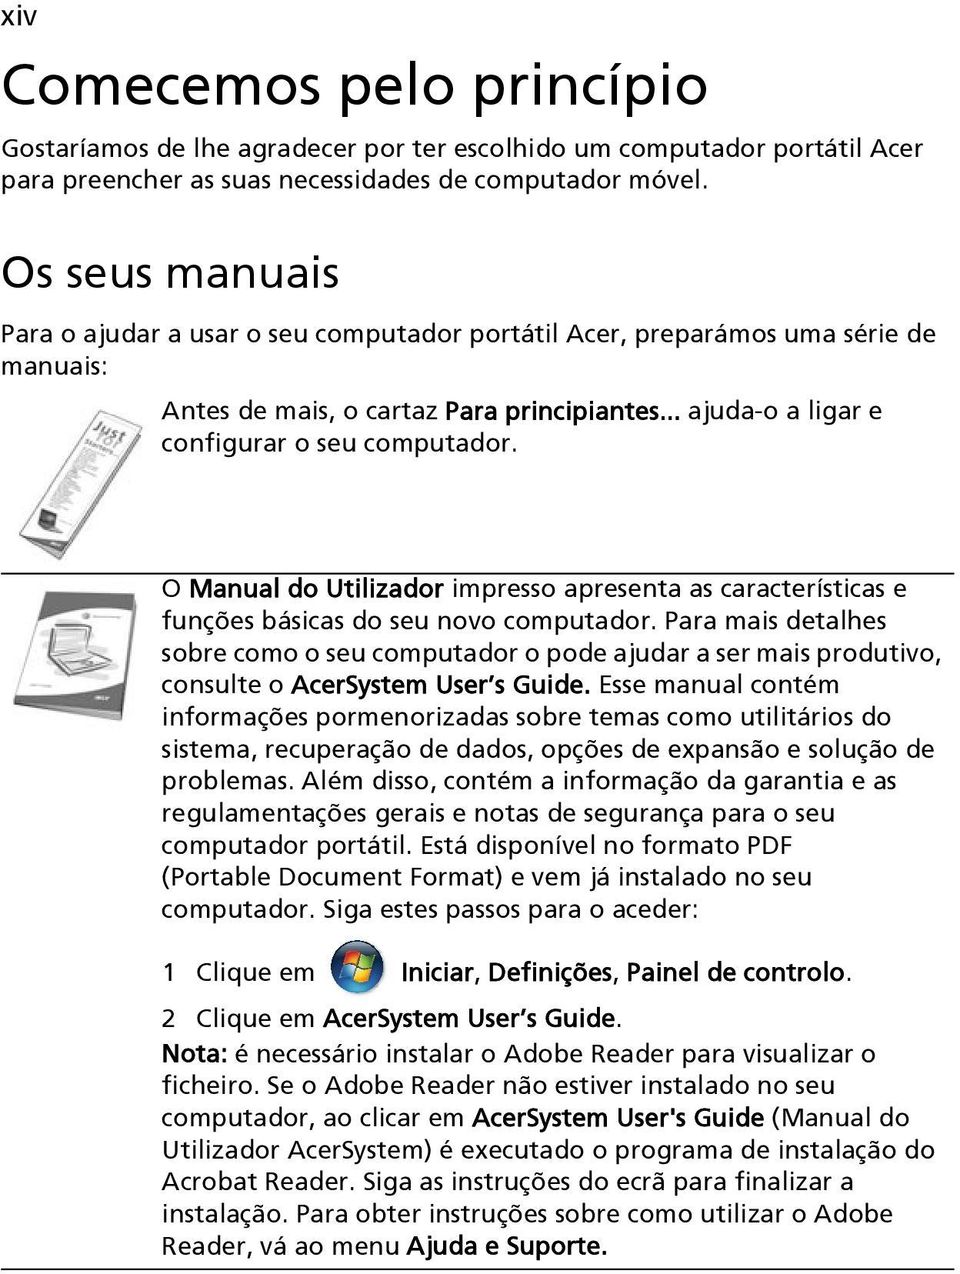 O Manual do Utilizador impresso apresenta as características e funções básicas do seu novo computador.